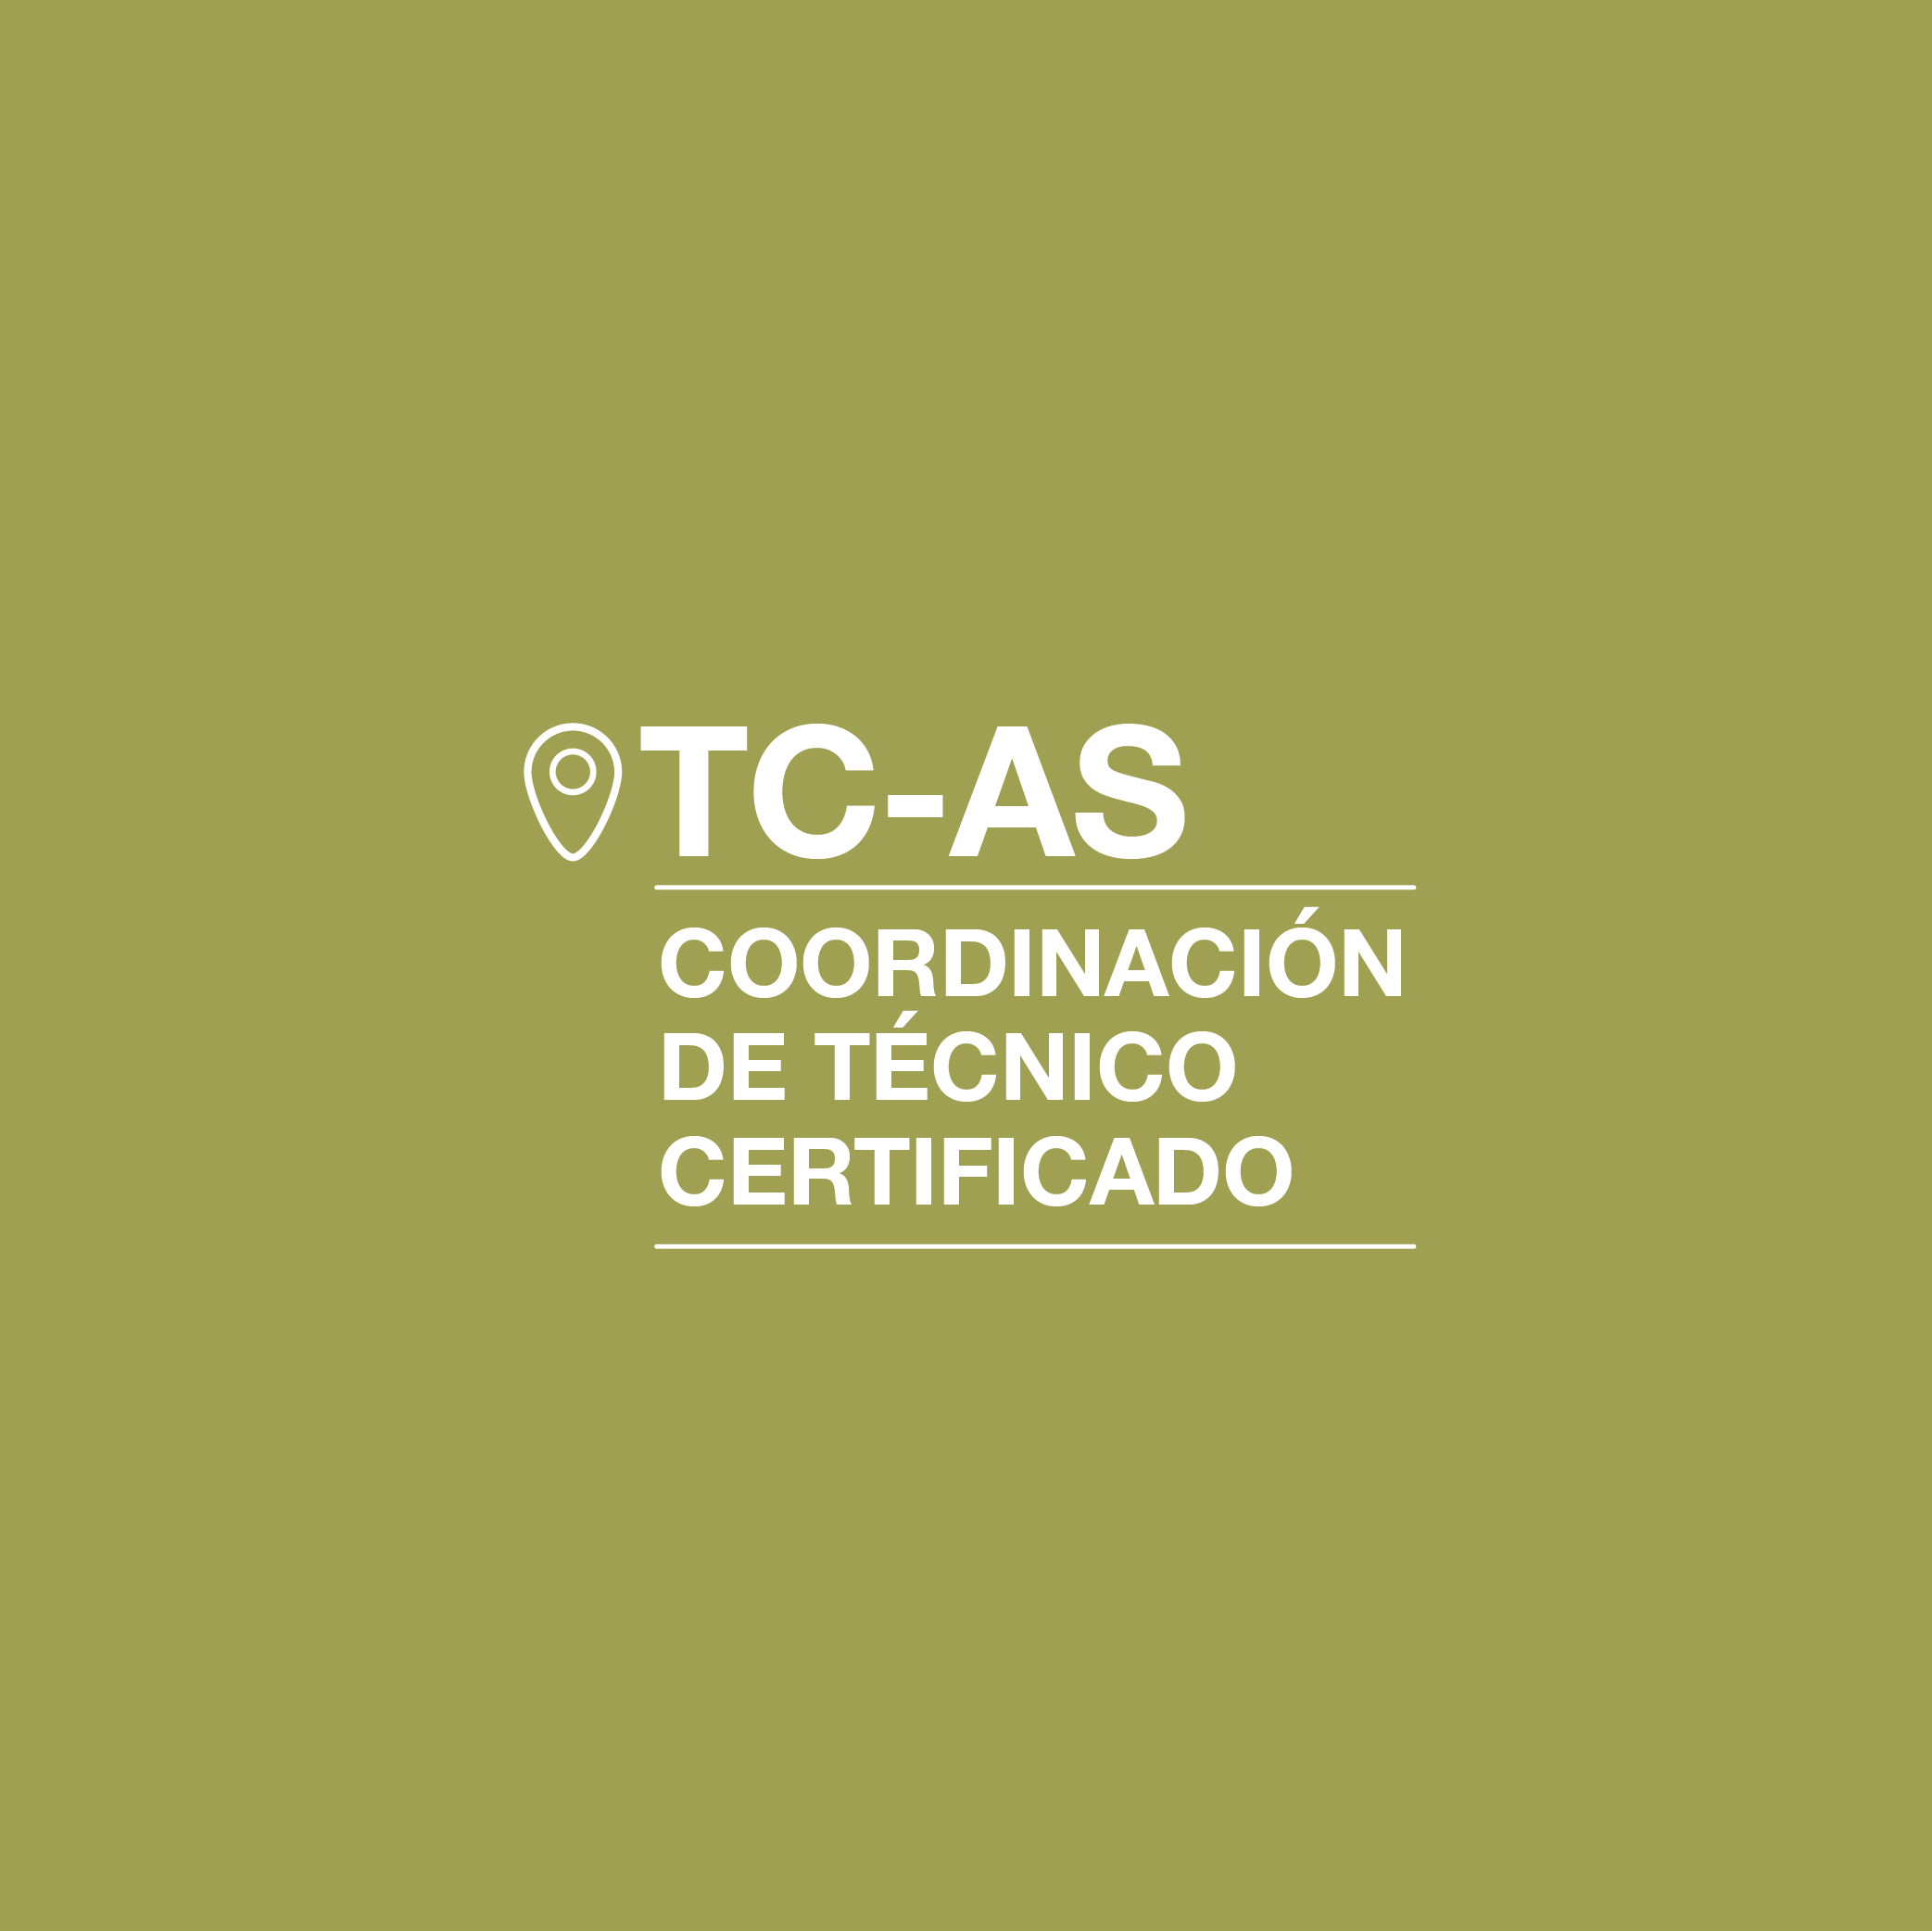 Coordinación de TC-AS